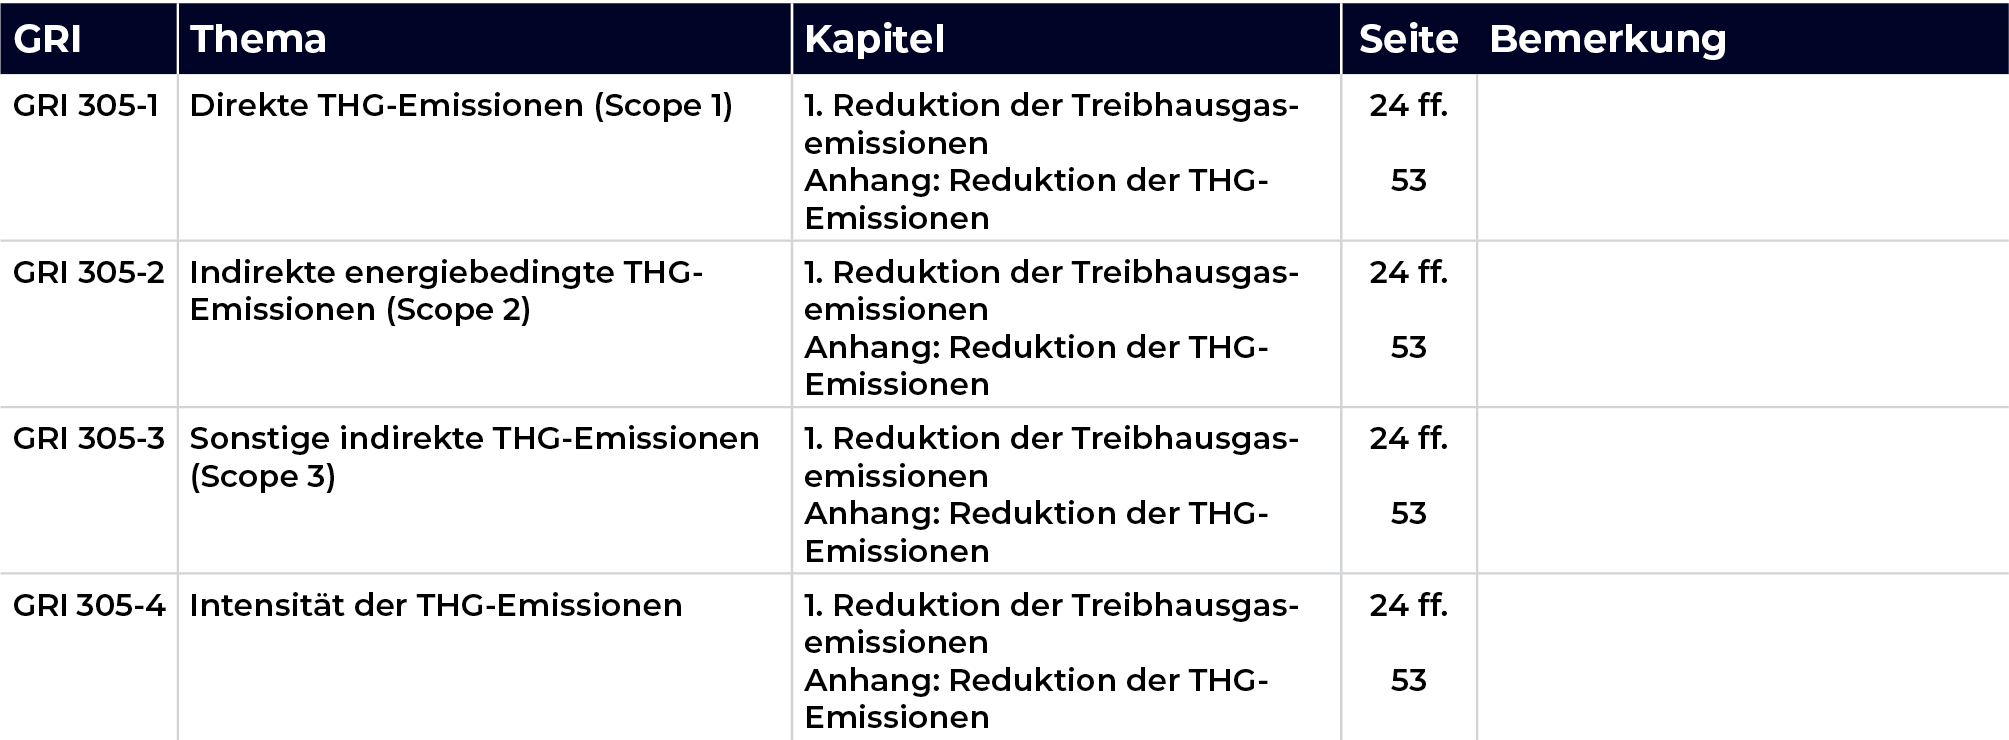 Mediengruppe Wiener Zeitung Nachhaltigkeitsbericht 2023 - GRI305–Emissionen2016-FE